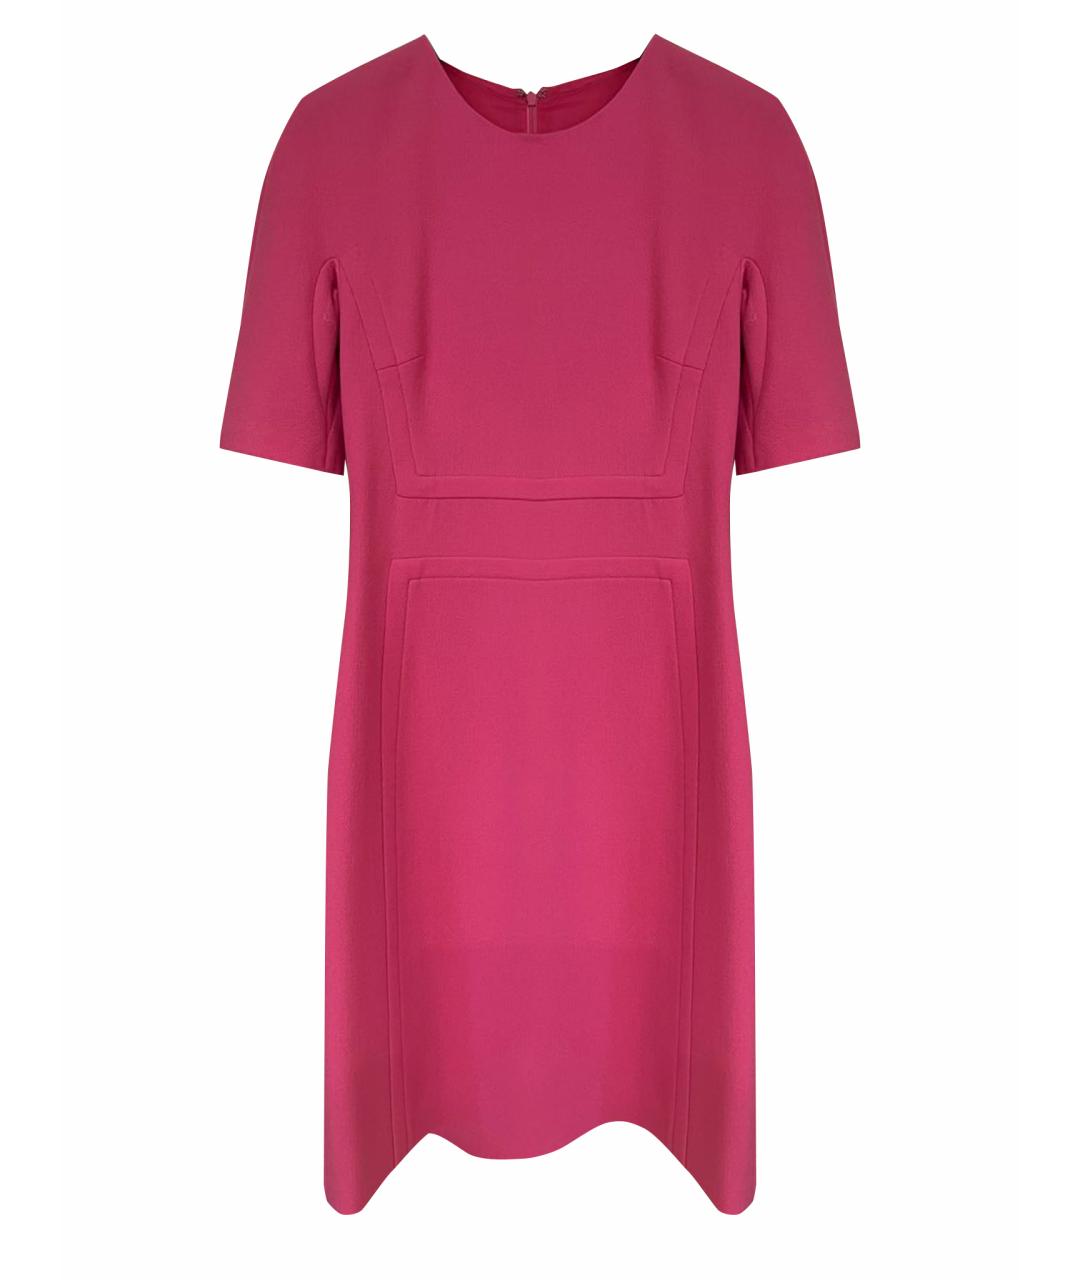 MICHAEL KORS COLLECTION Розовое креповое коктейльное платье, фото 1